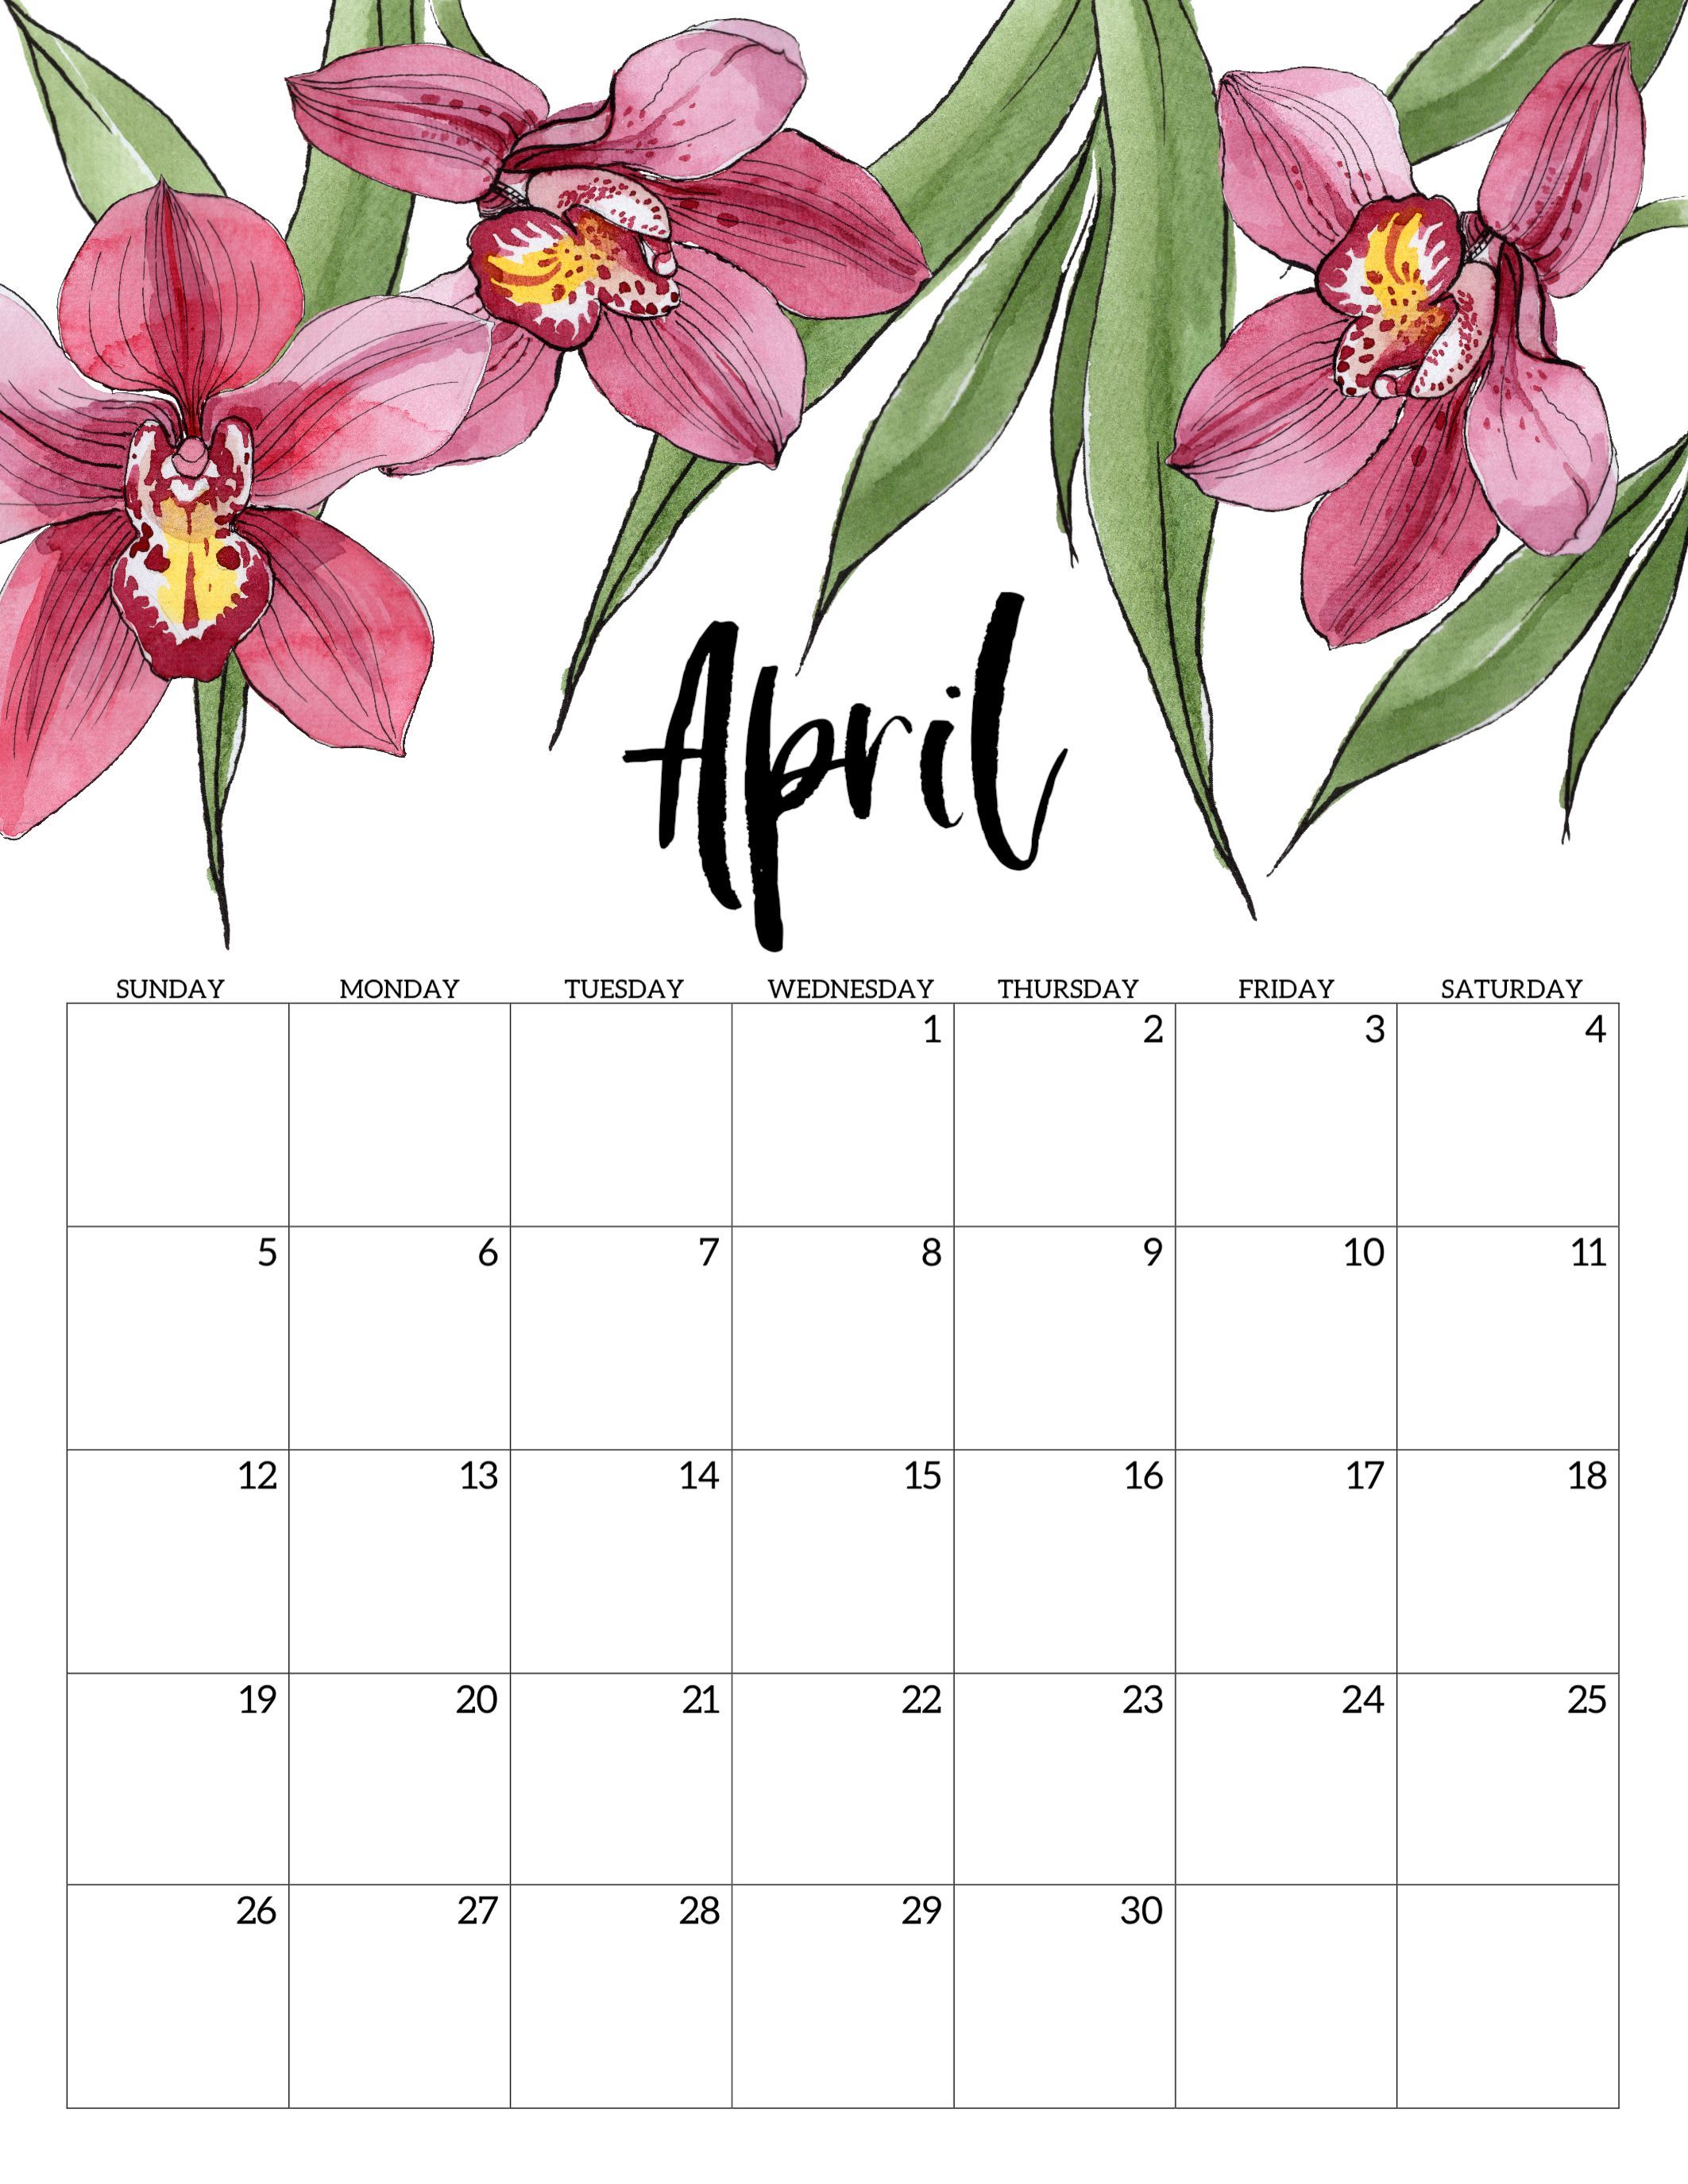 April 2020 Calendar Wallpaper Free April 2020 Calendar